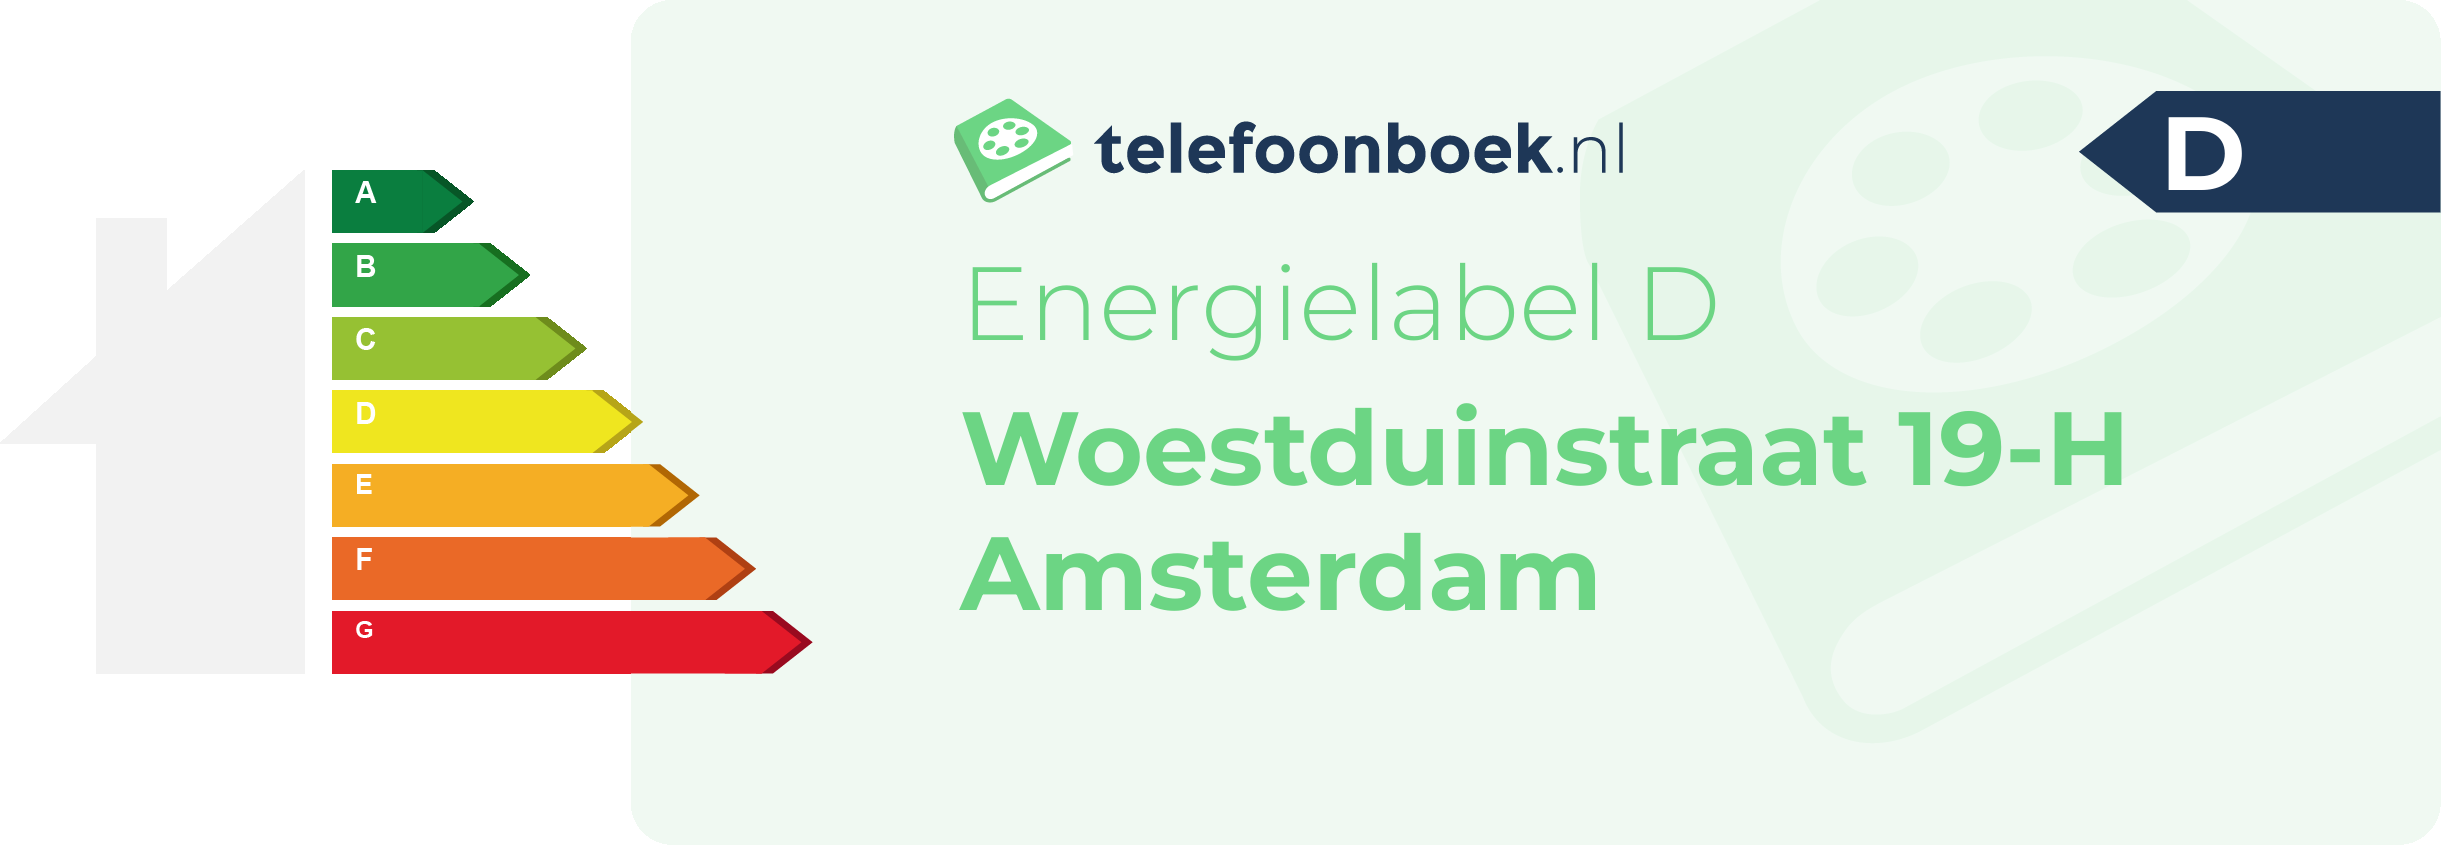 Energielabel Woestduinstraat 19-H Amsterdam